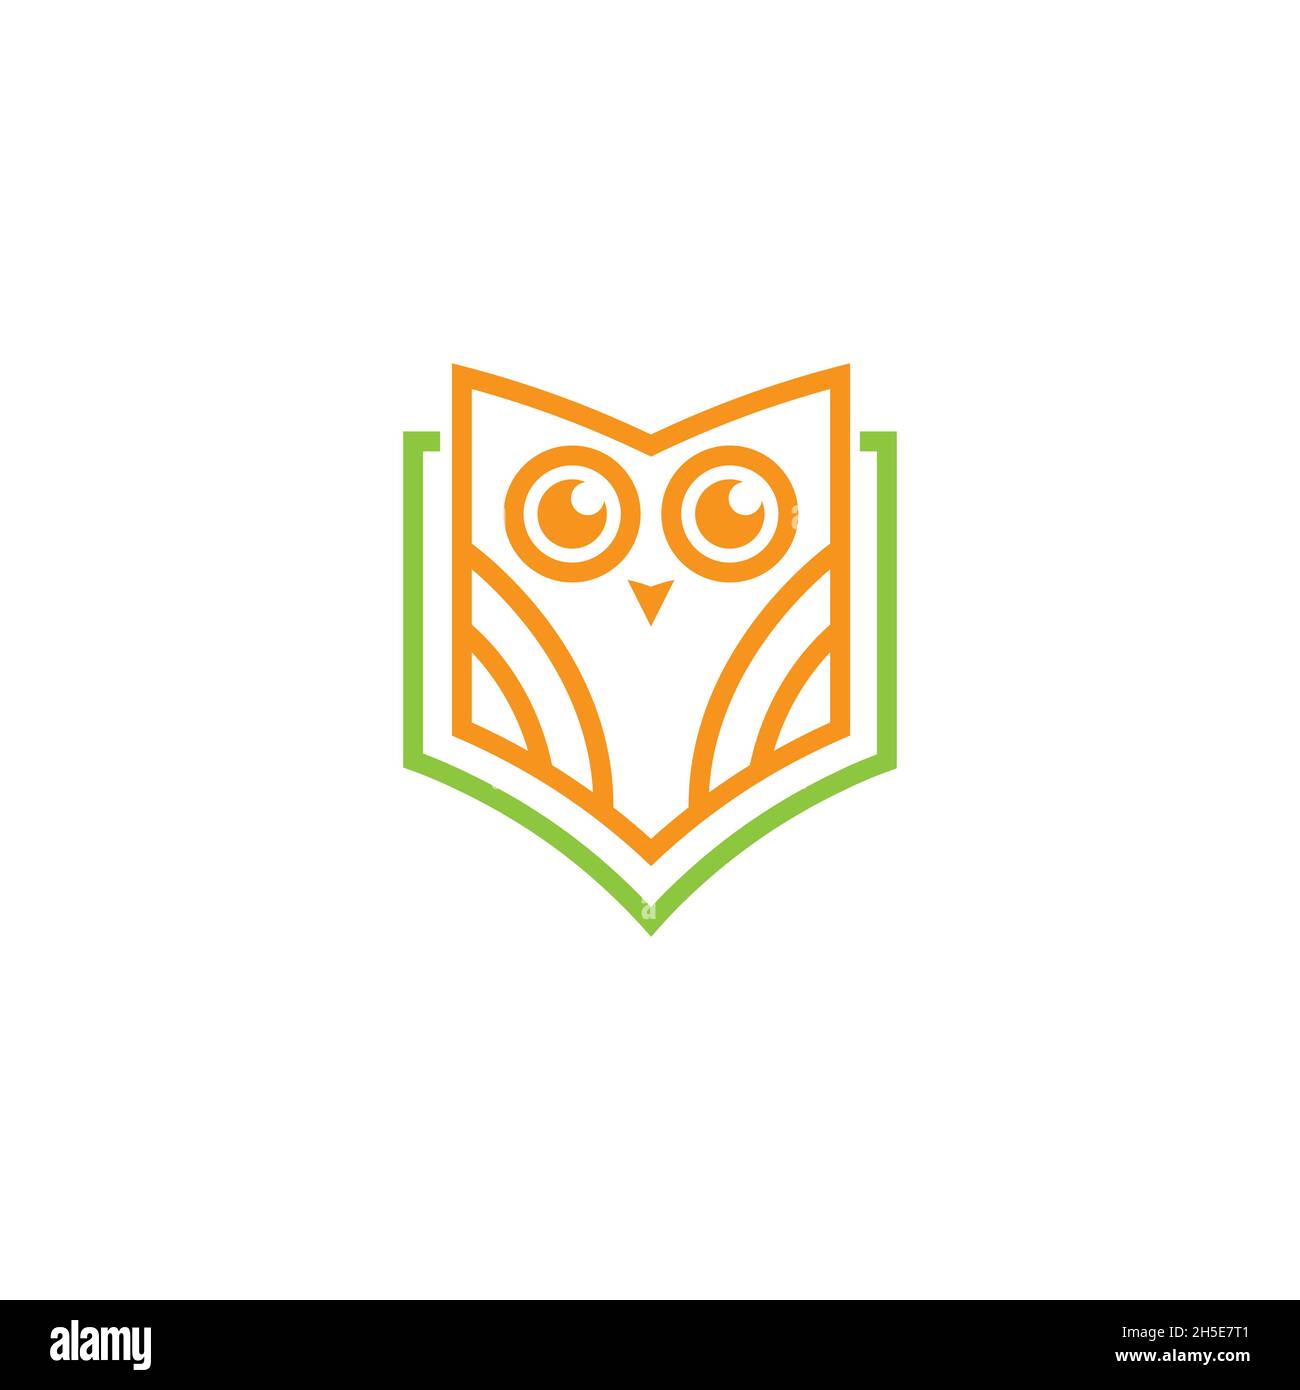 disegno vettoriale. Logo creato dalla combinazione di logo OWL e logo del libro. Illustrazione Vettoriale